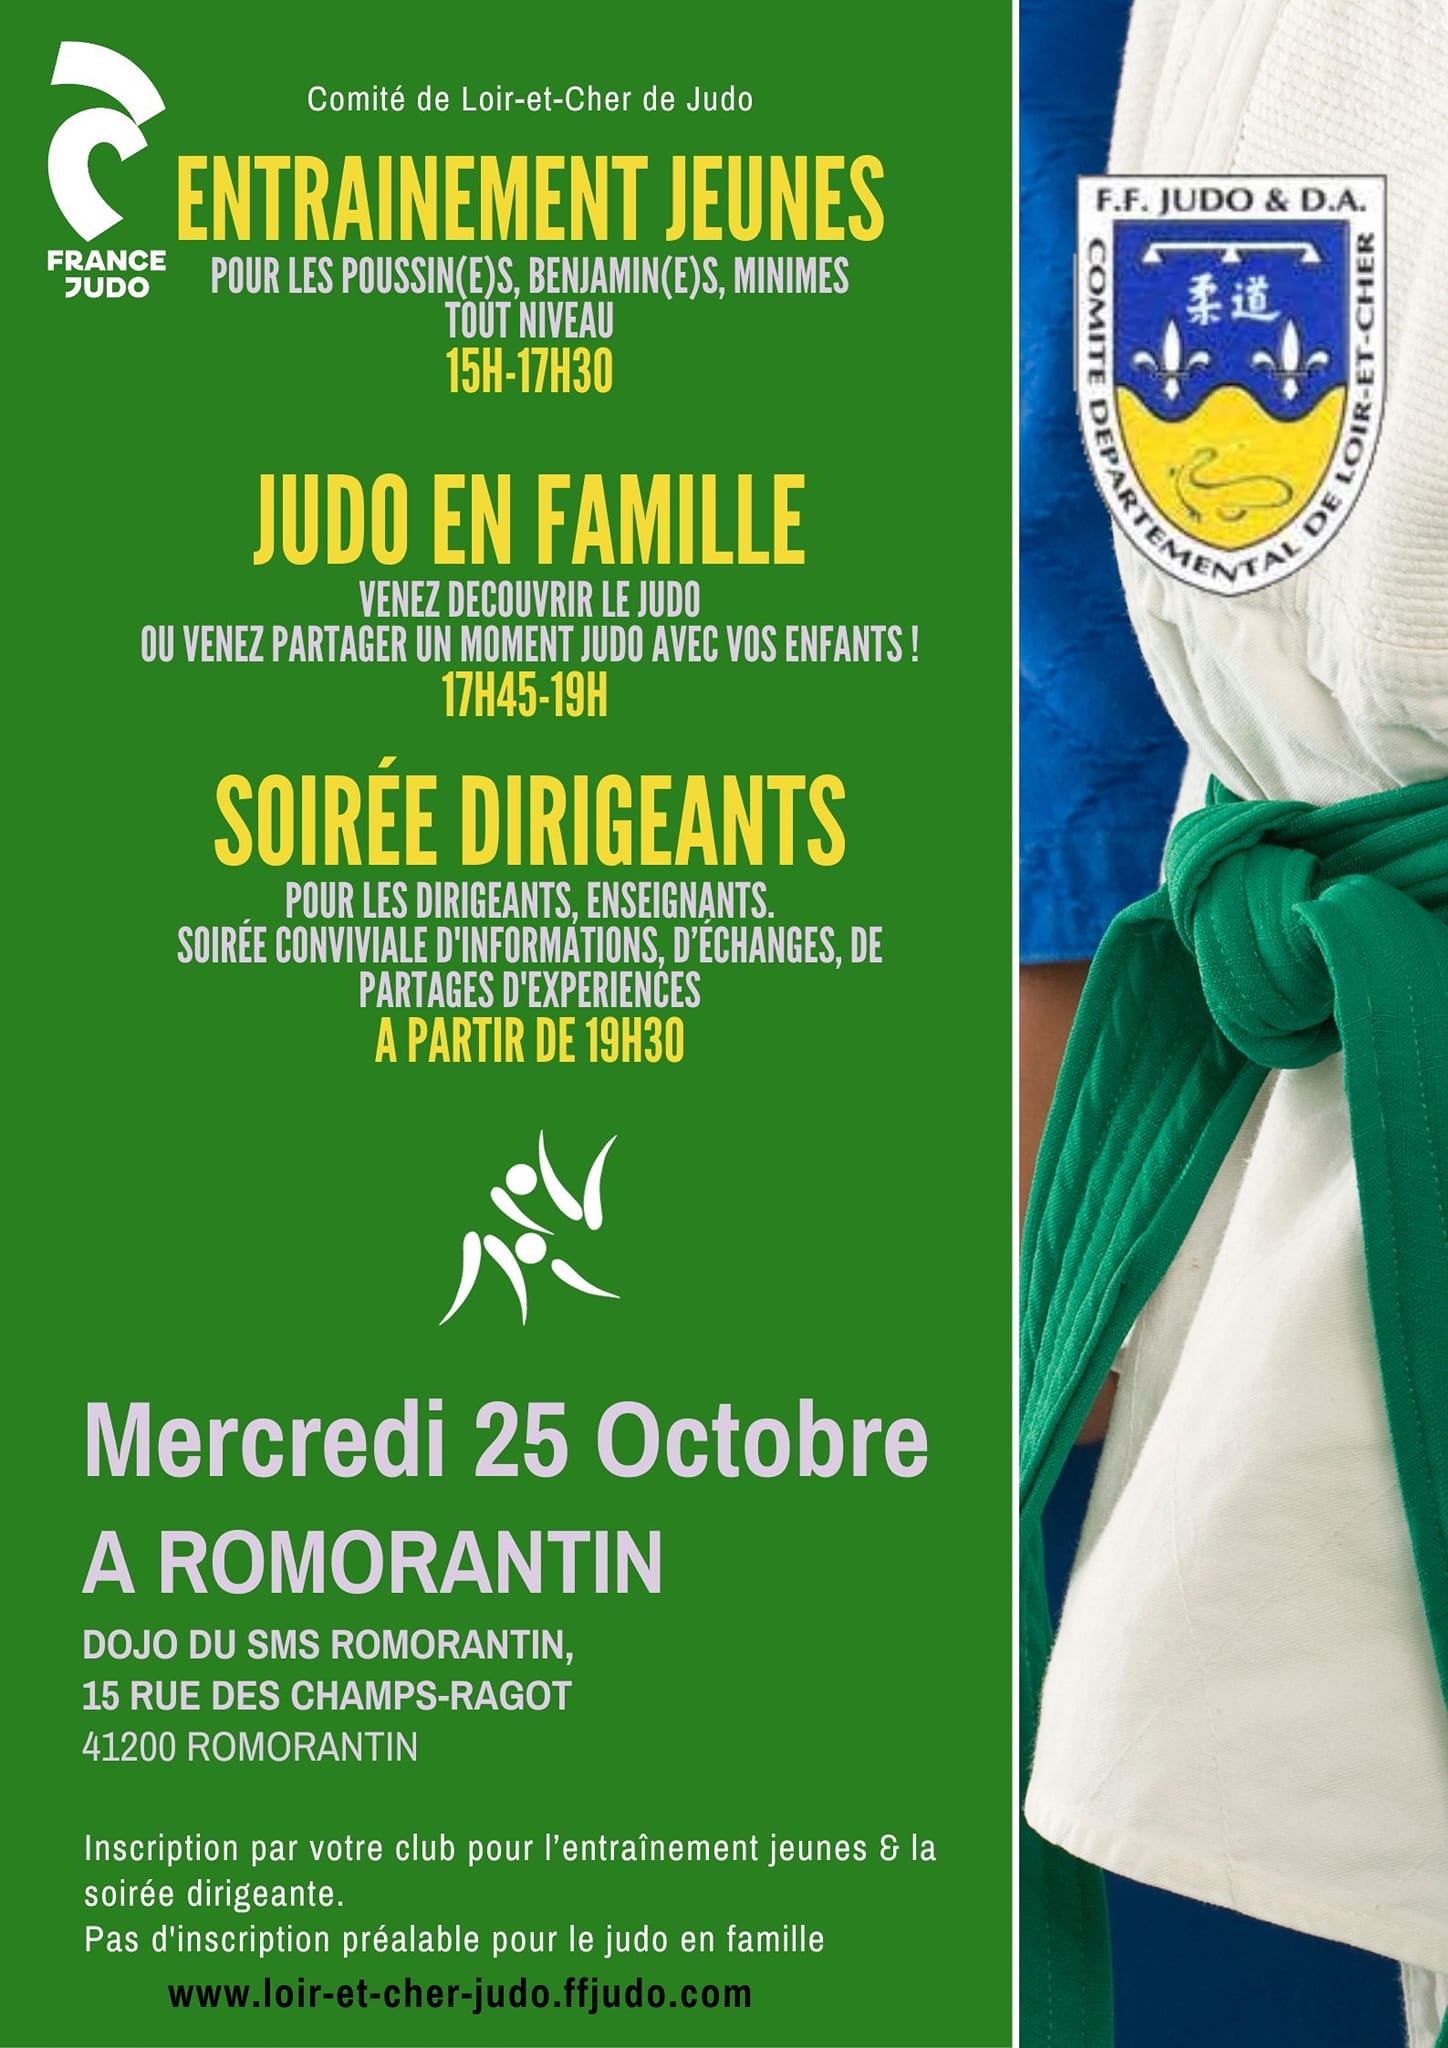 Entrainement Jeunes, Judo en Familles et Soirée Dirigeants du 25/10/23 à Romorantin